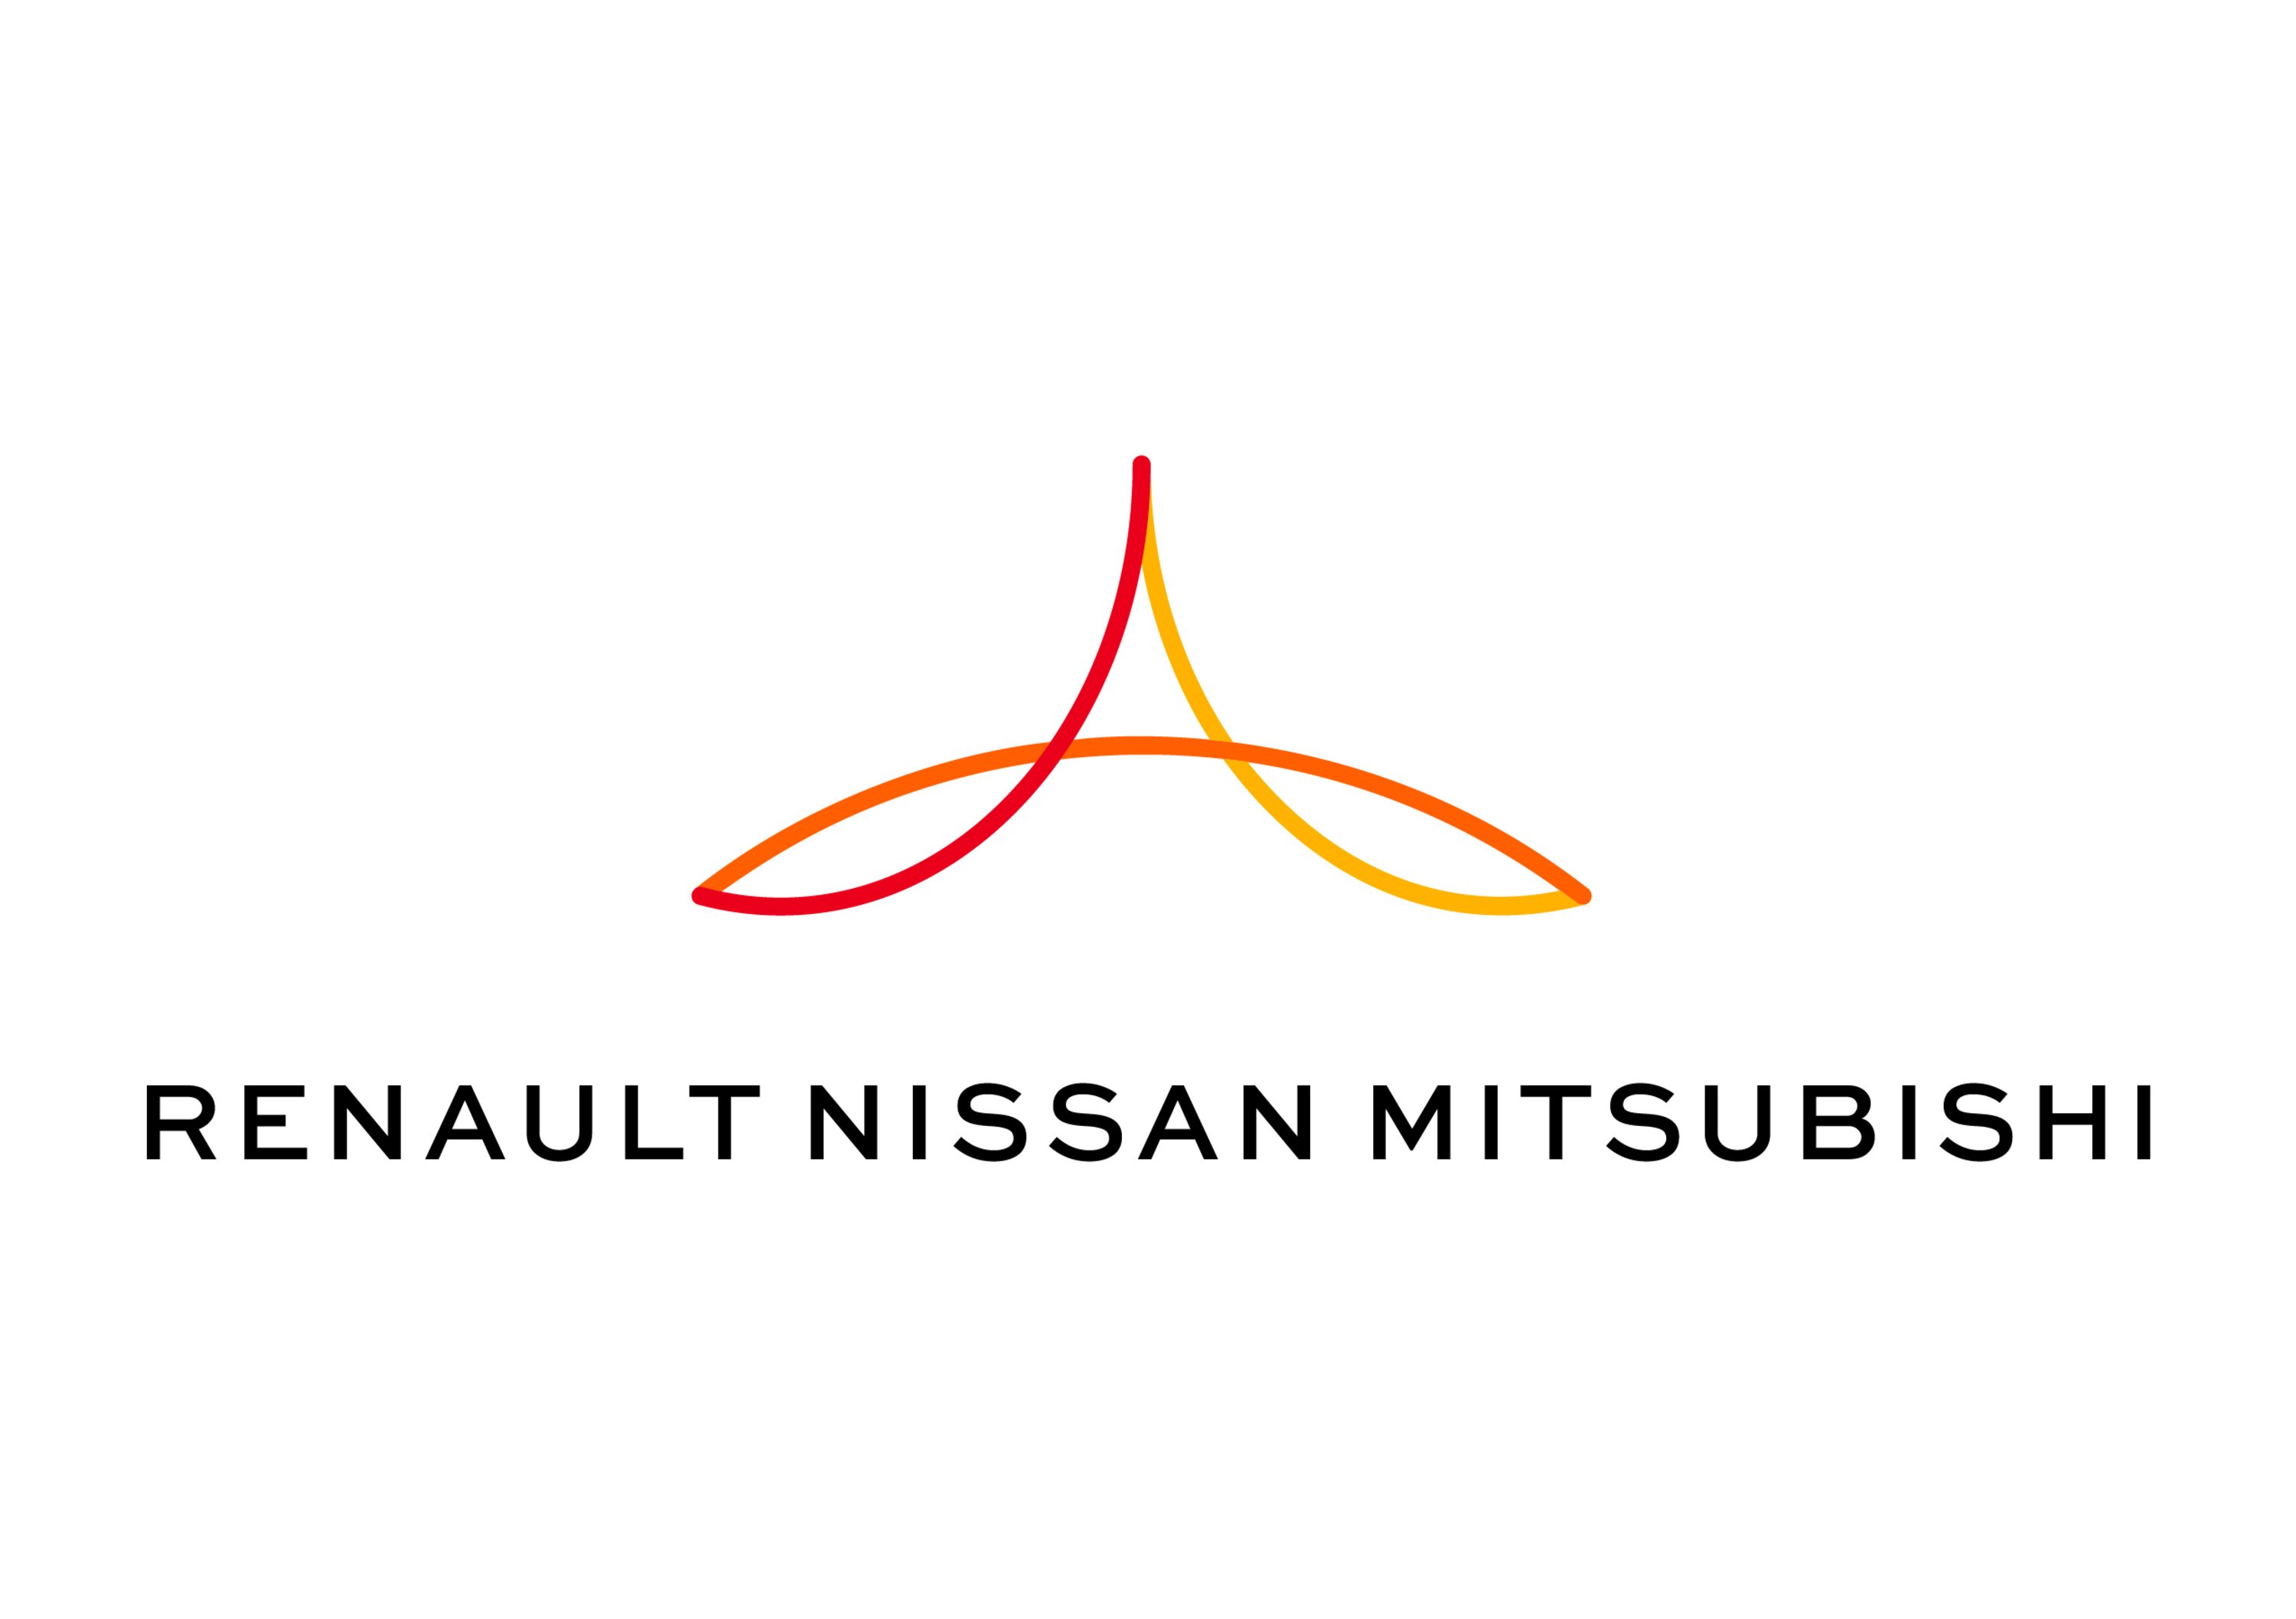 Alleanza Renault-Nissan e Mitsubishi, annunciato il piano fino al 2022